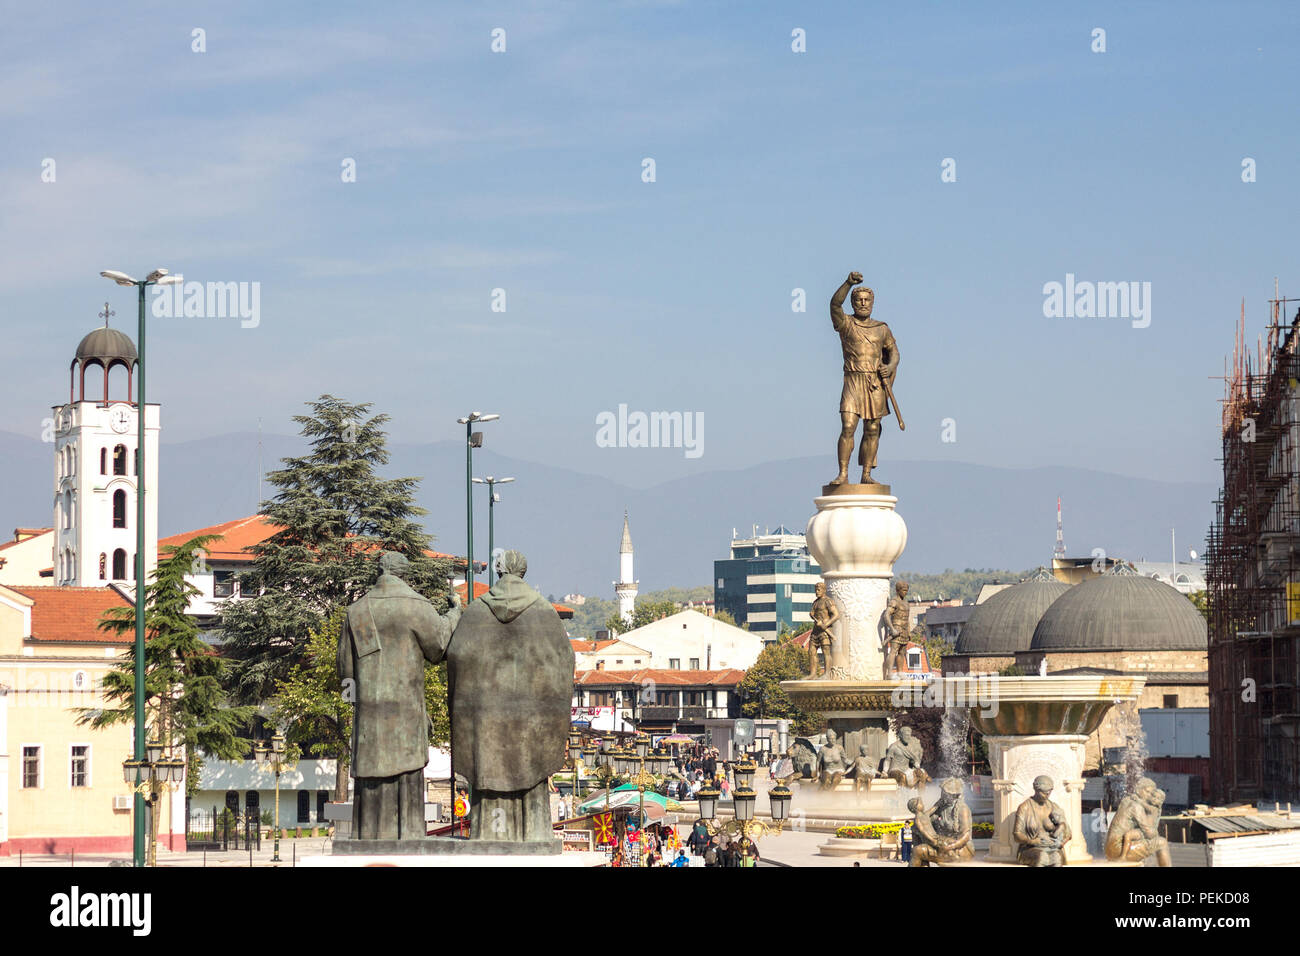 SKOPJE, Mazedonien - Oktober 10. 2015: Statue von Philipp II. von Makedonien, alten König von Mazedonien. 2012 eröffnet, wurde es zu einem der Wahrzeichen o Stockfoto